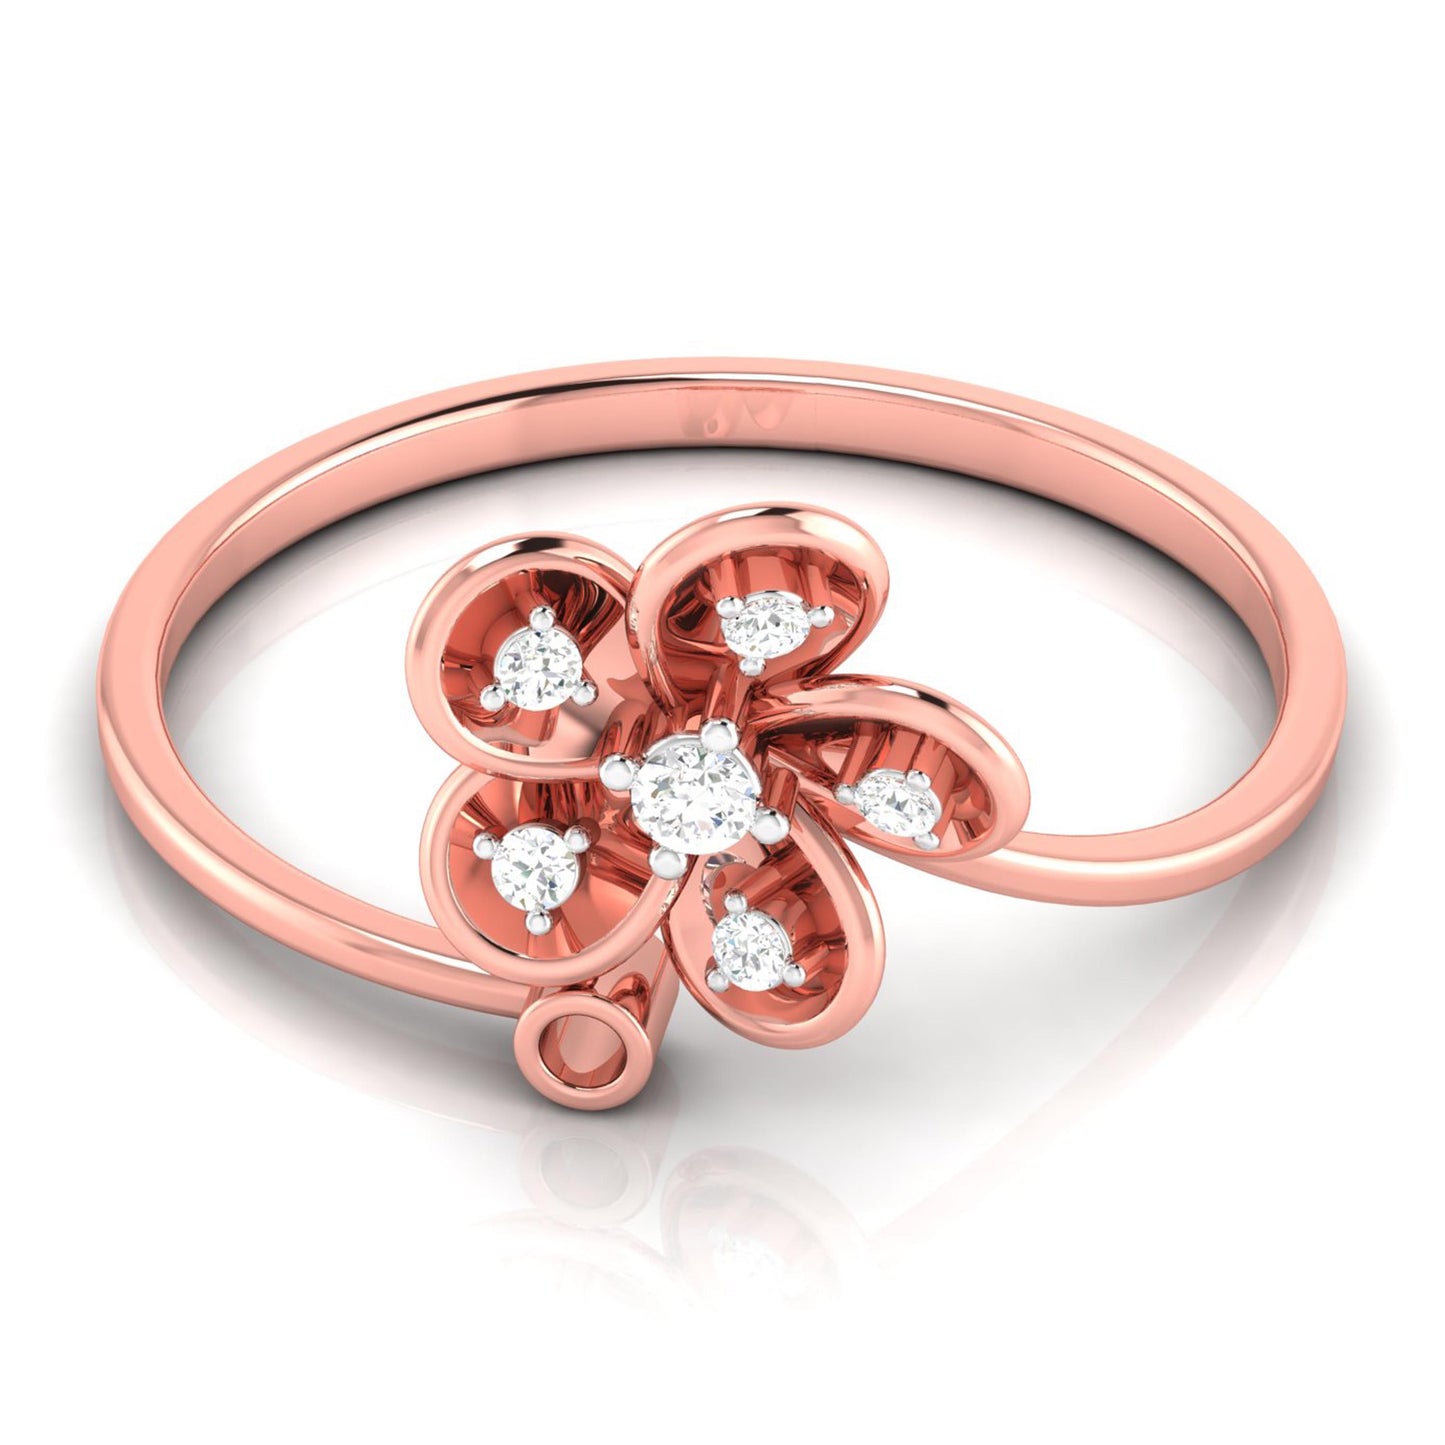 Engagement Diamond Ring design for female - YouTube